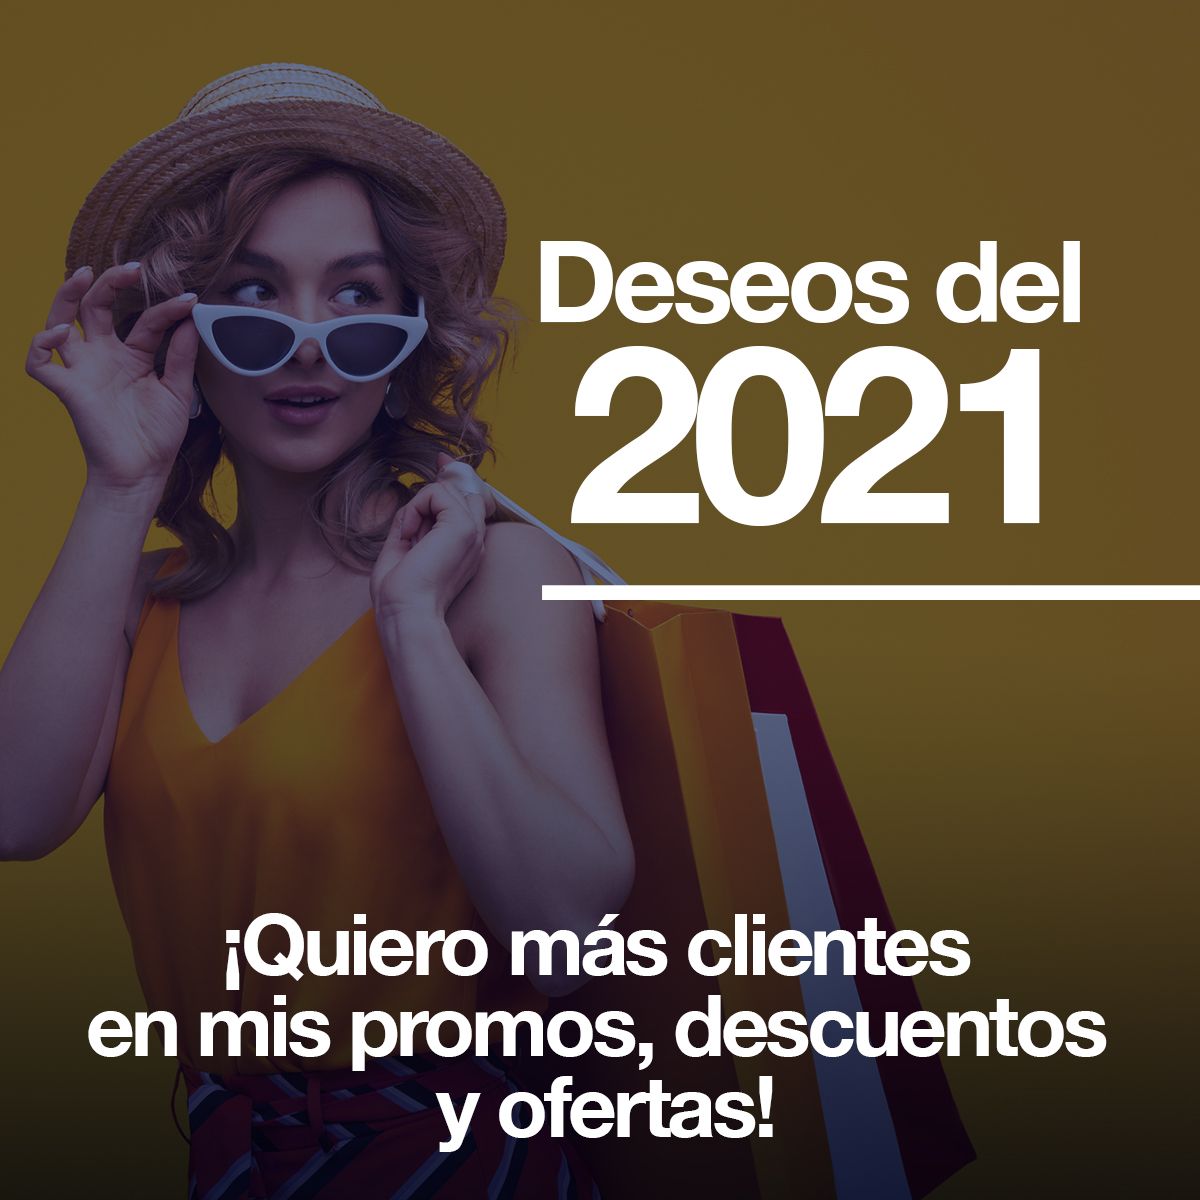 Deseos del 2021: ¡Quiero más clientes en mis promos, descuentos y ofertas!